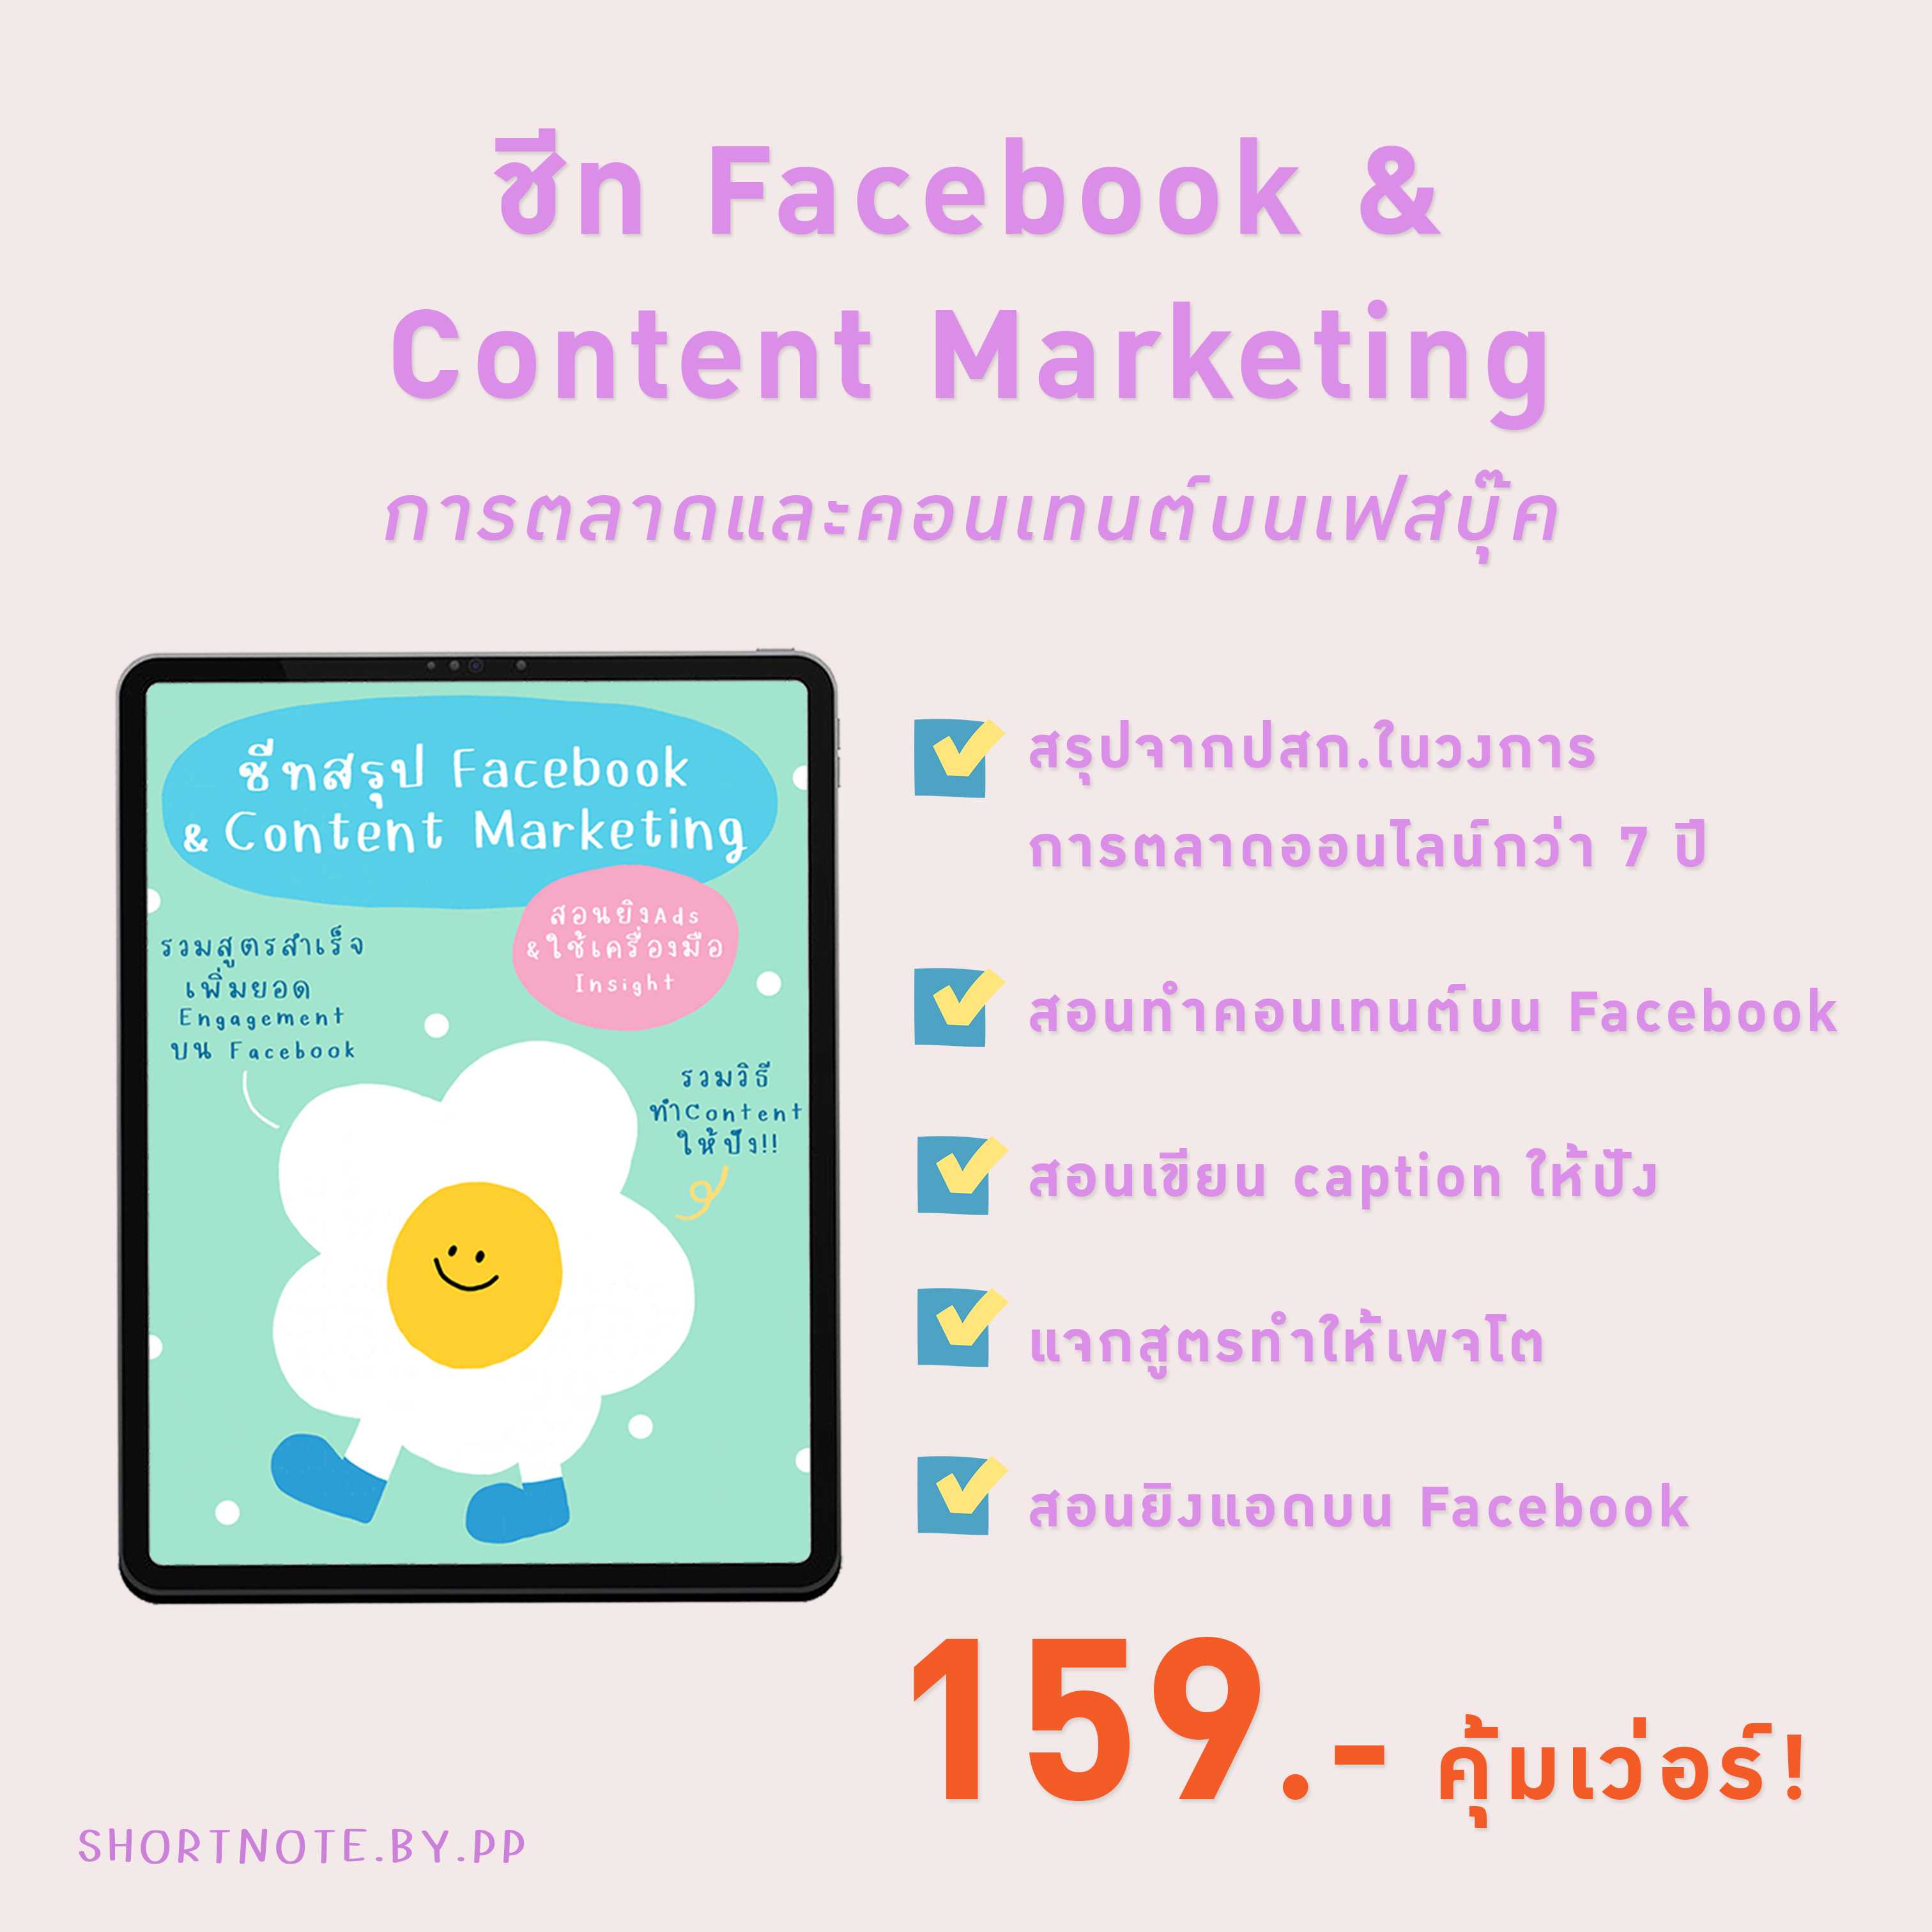 ชีท Facebook & Content Marketing ✨ส่งเป็นไฟล์ PDF ทางอีเมลเท่านั้น✨